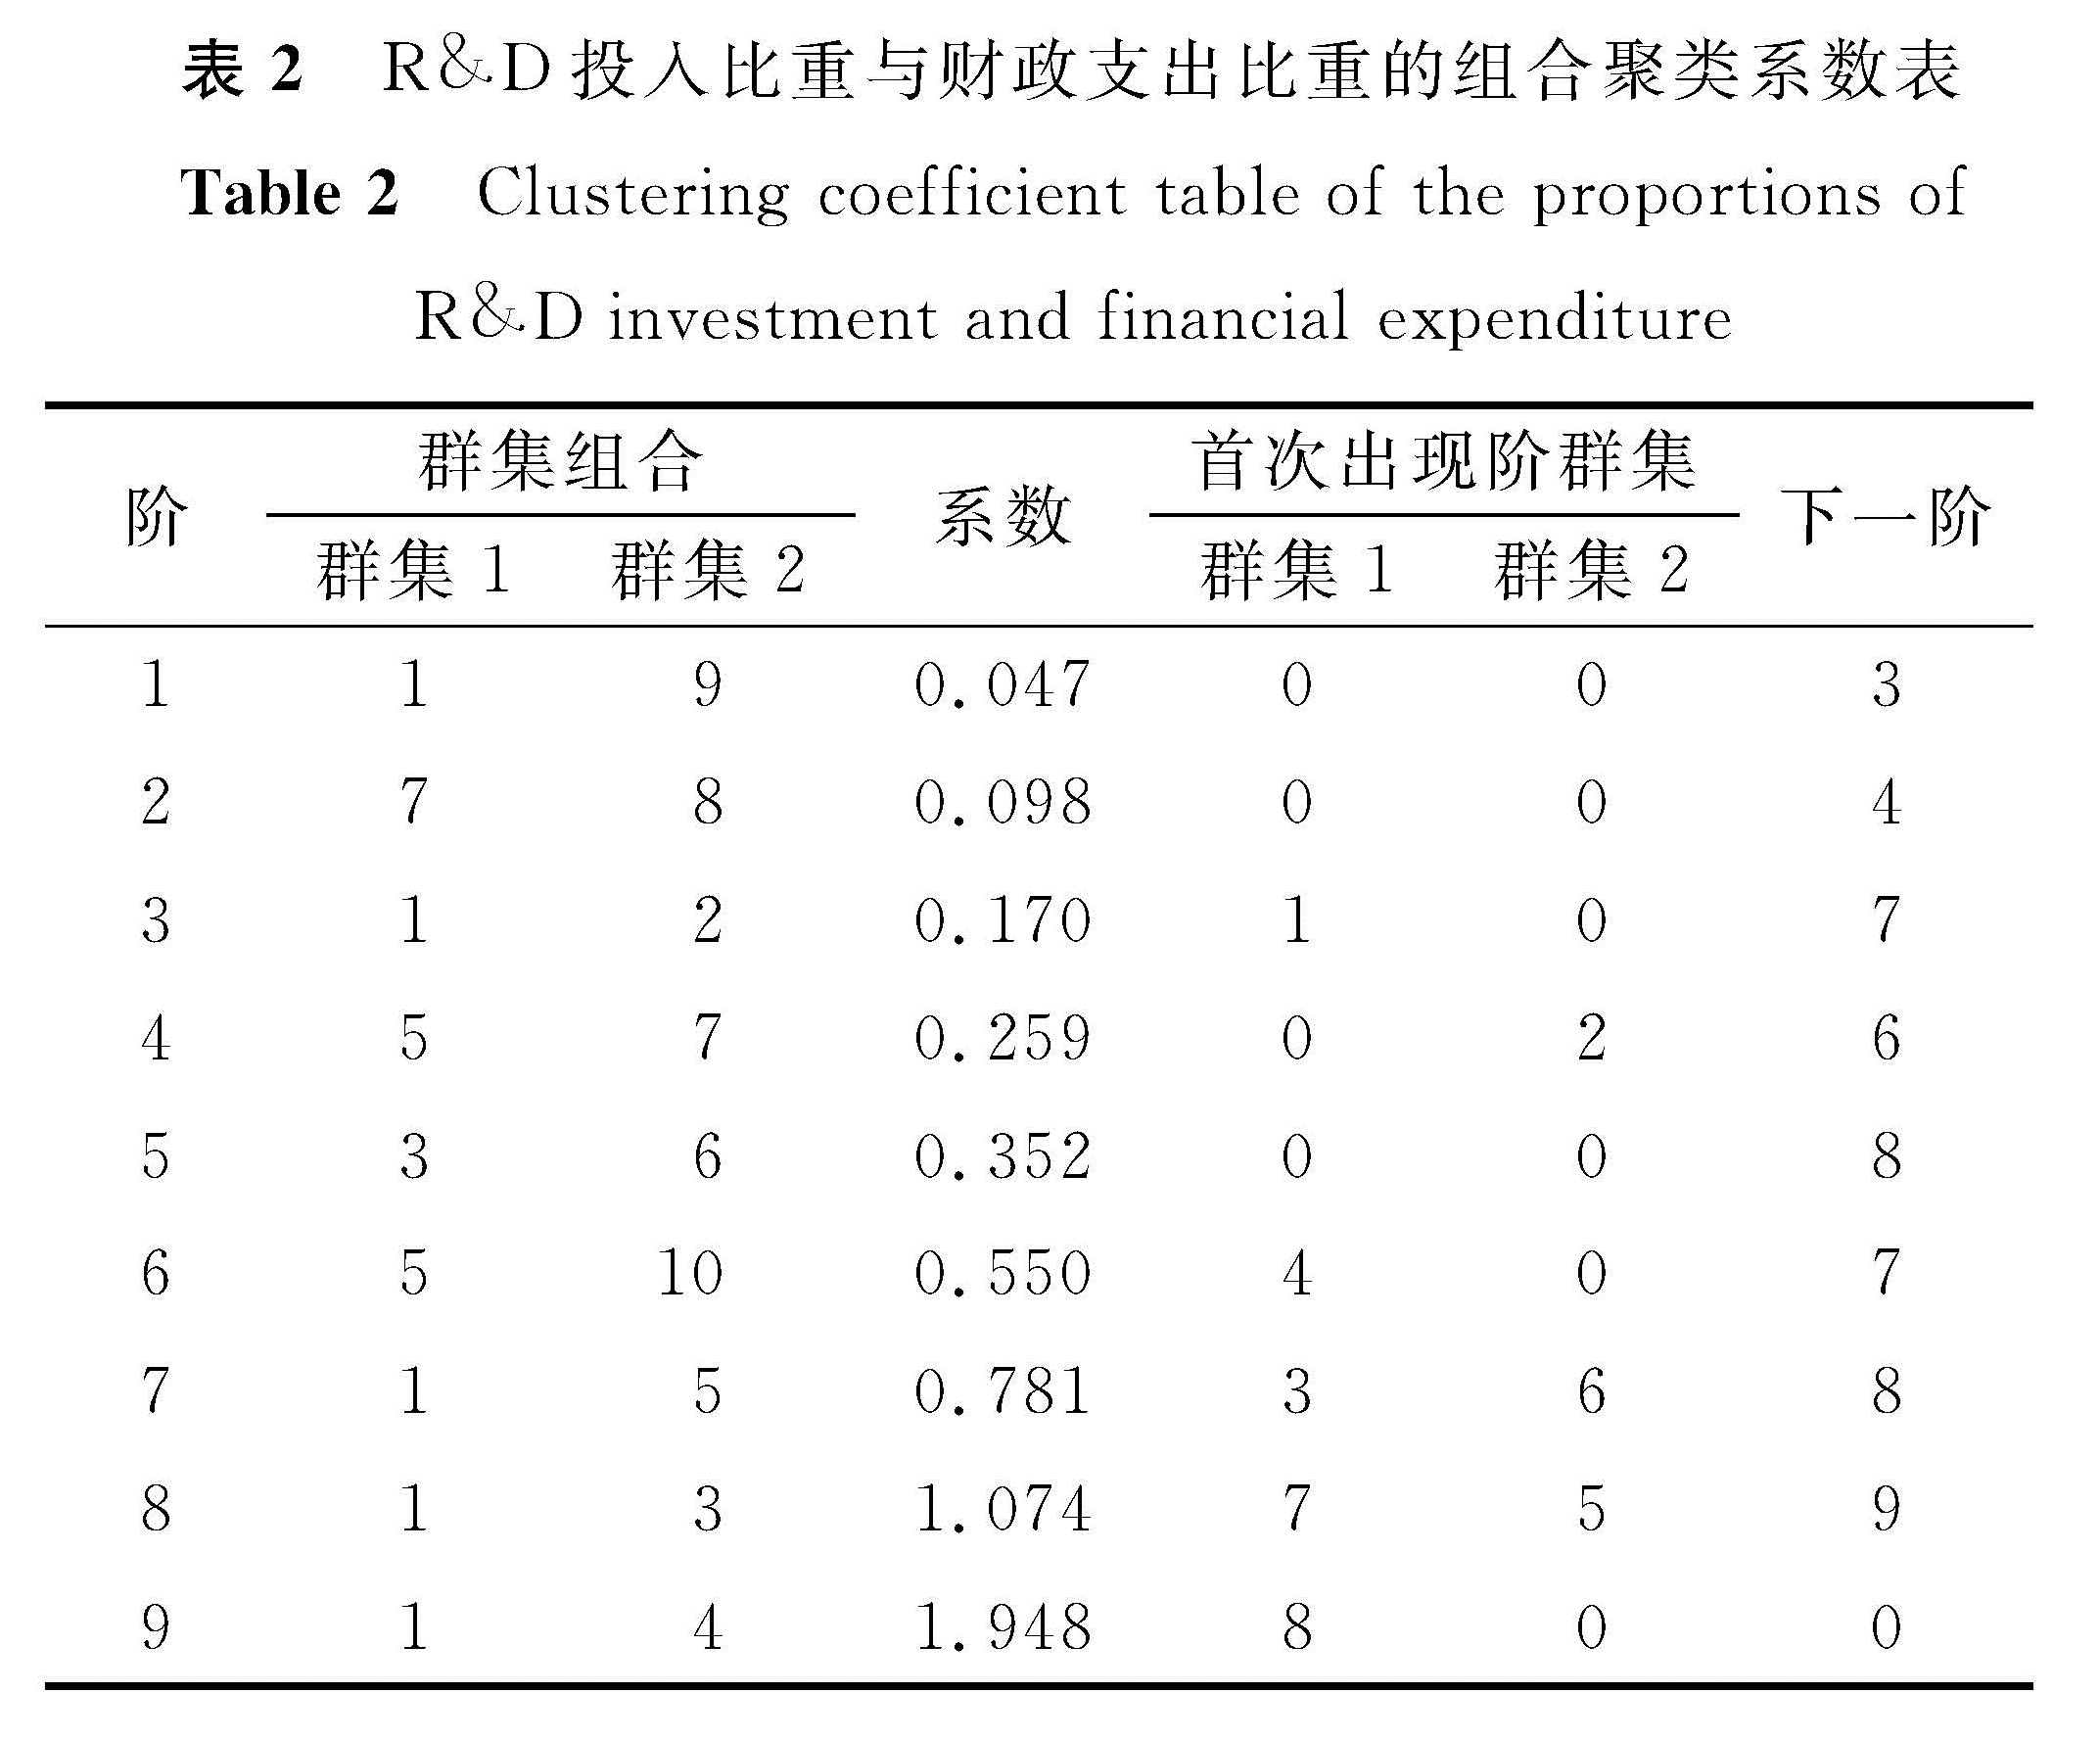 表2 R&D投入比重与财政支出比重的组合聚类系数表<br/>Table 2 Clustering coefficient table of the proportions of R&D investment and financial expenditure